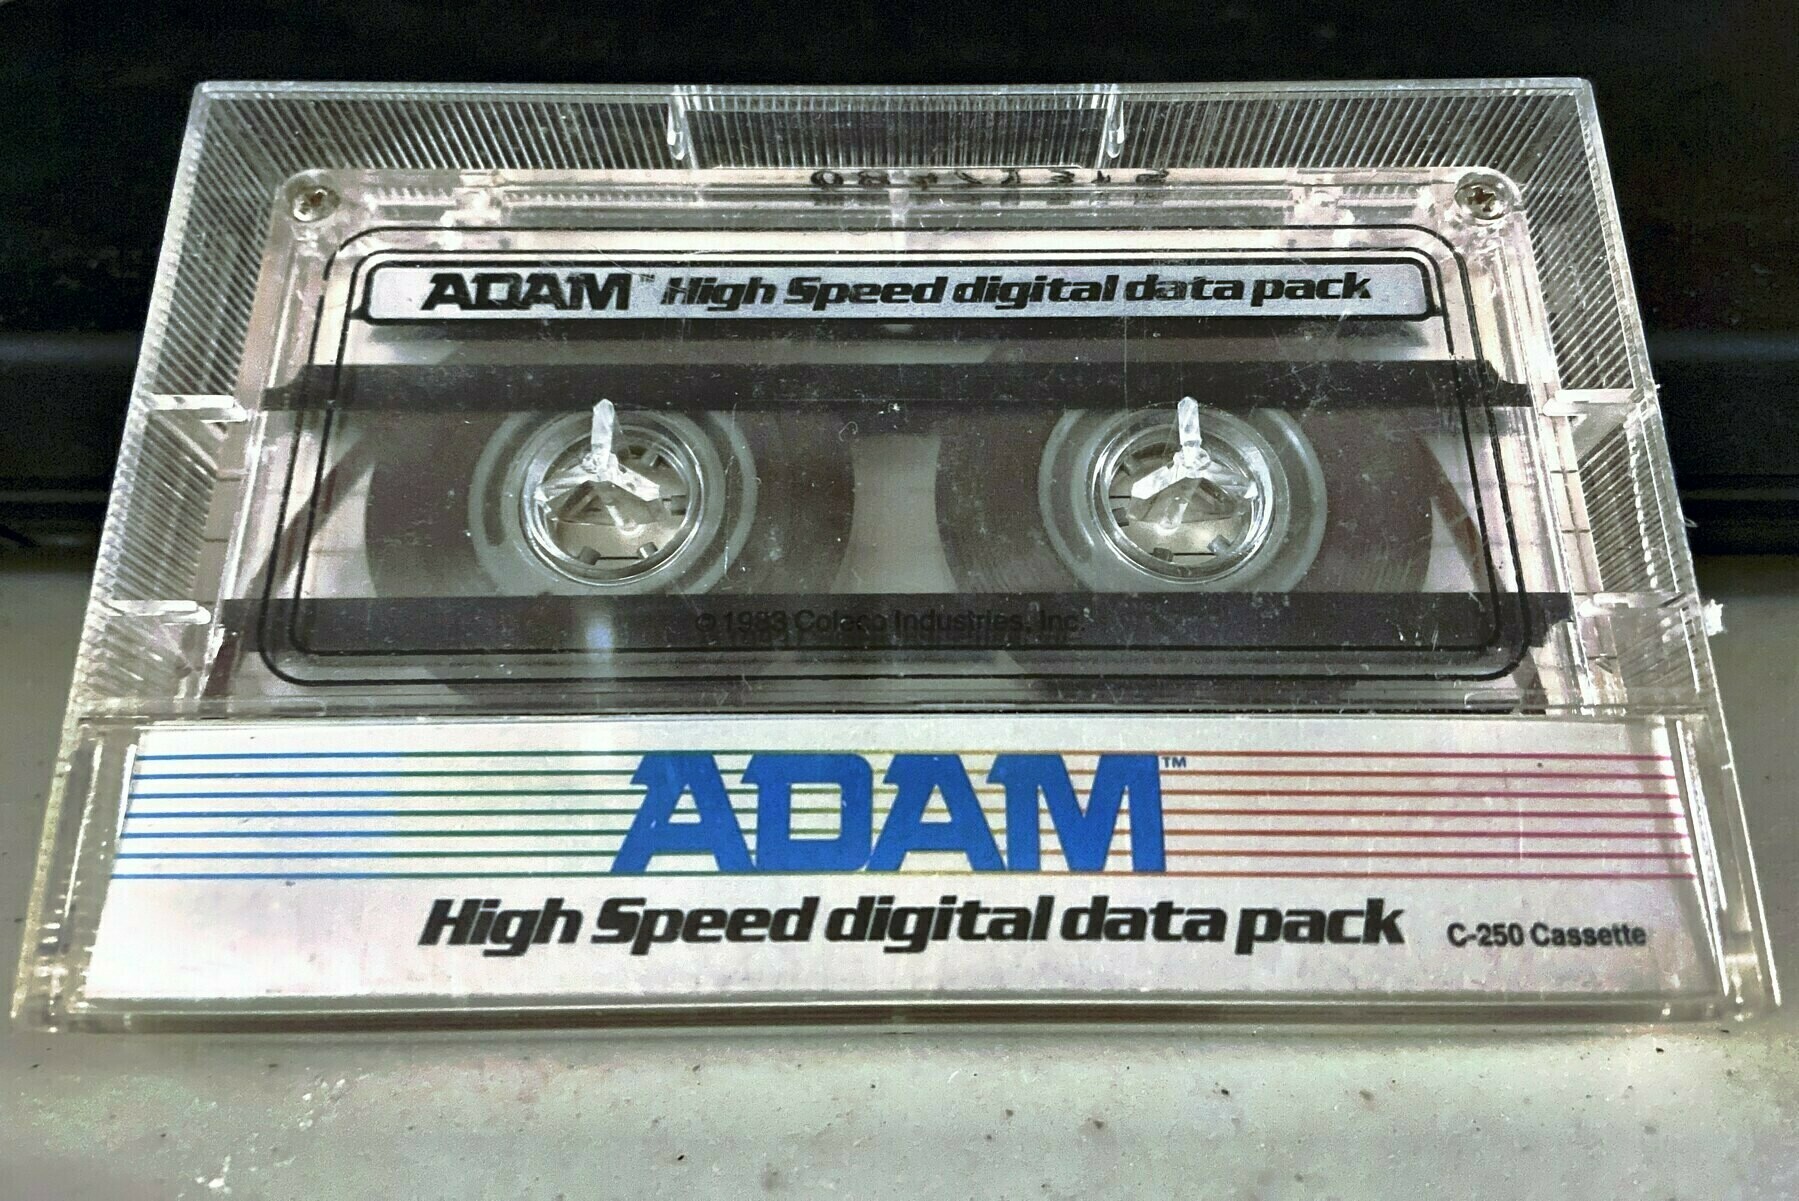 ADAM High Speed Digital Data Pack